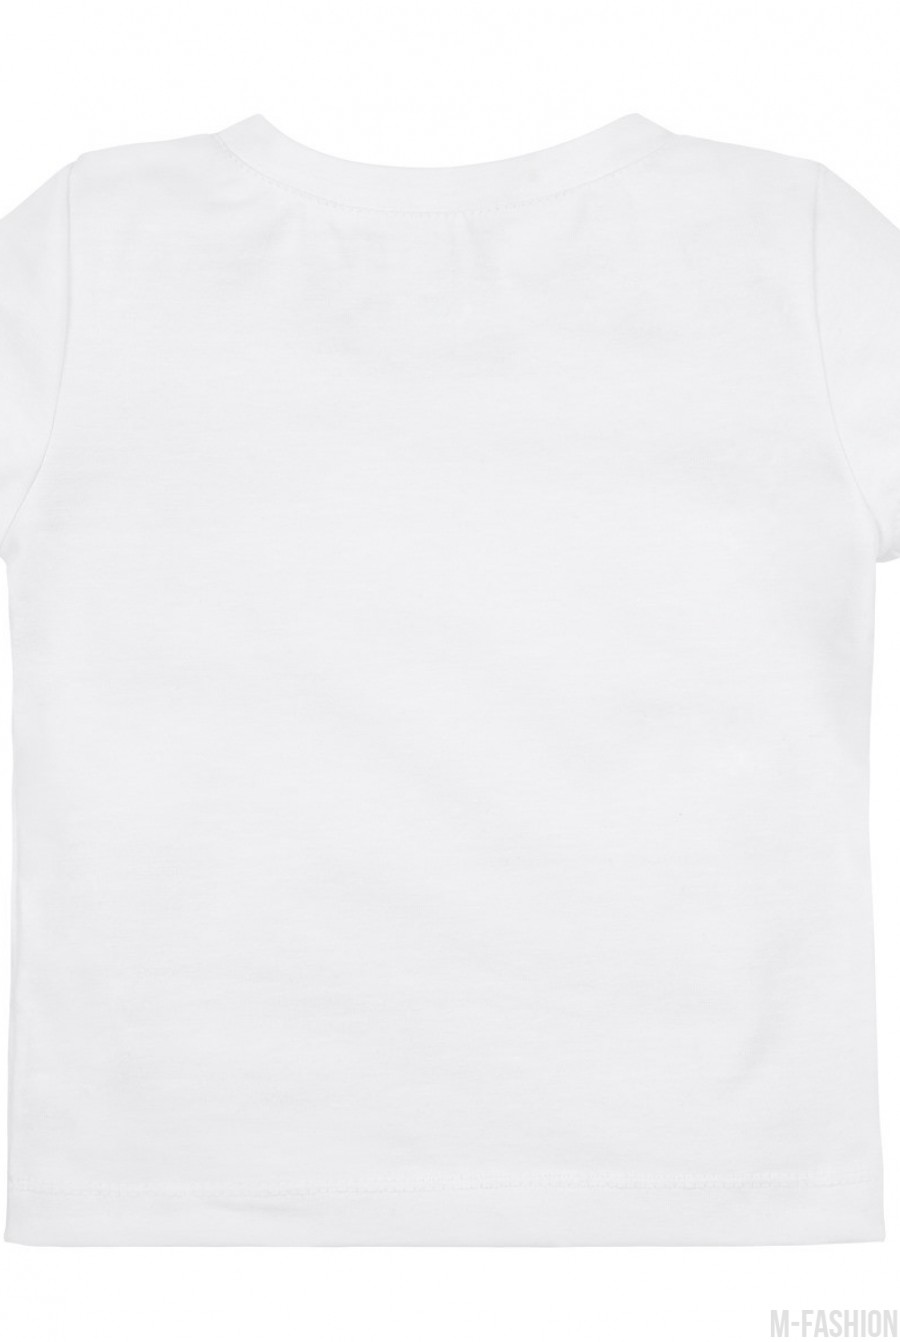 Белая трикотажная футболка с возможностью индивидуальной печати цифры (1-7) на принте- Фото 2